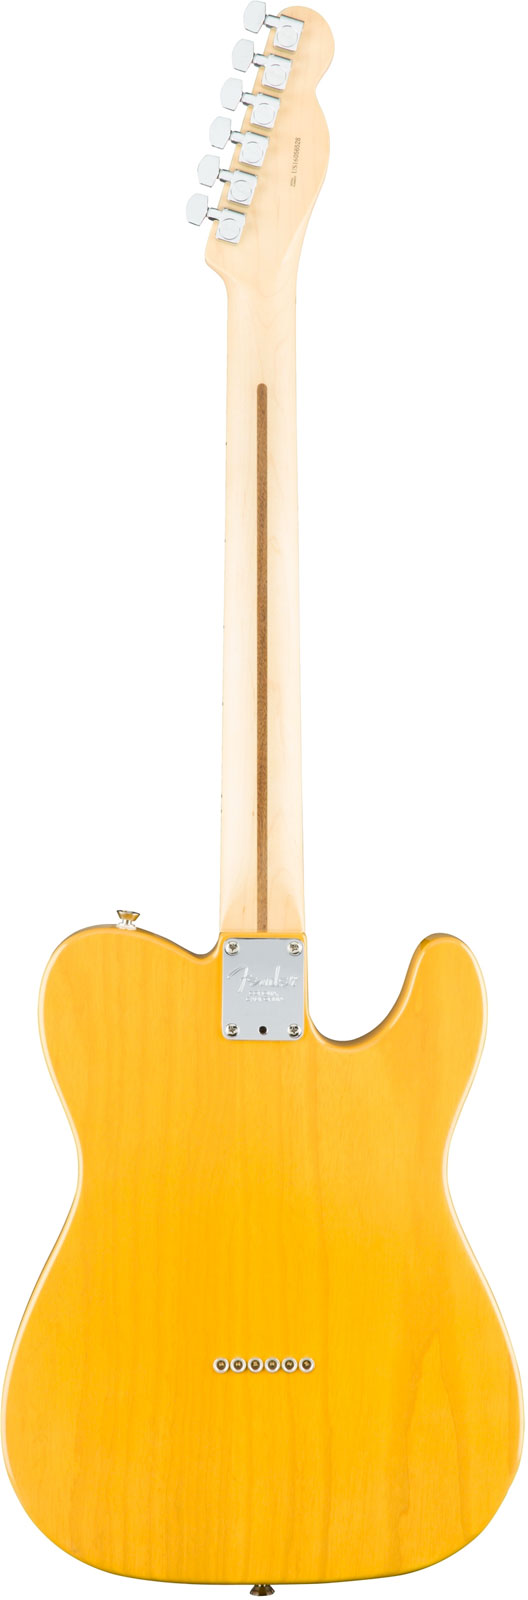 Fender Tele American Professional Lh Usa Gaucher 2s Mn - Butterscotch Blonde - E-Gitarre für Linkshänder - Variation 2